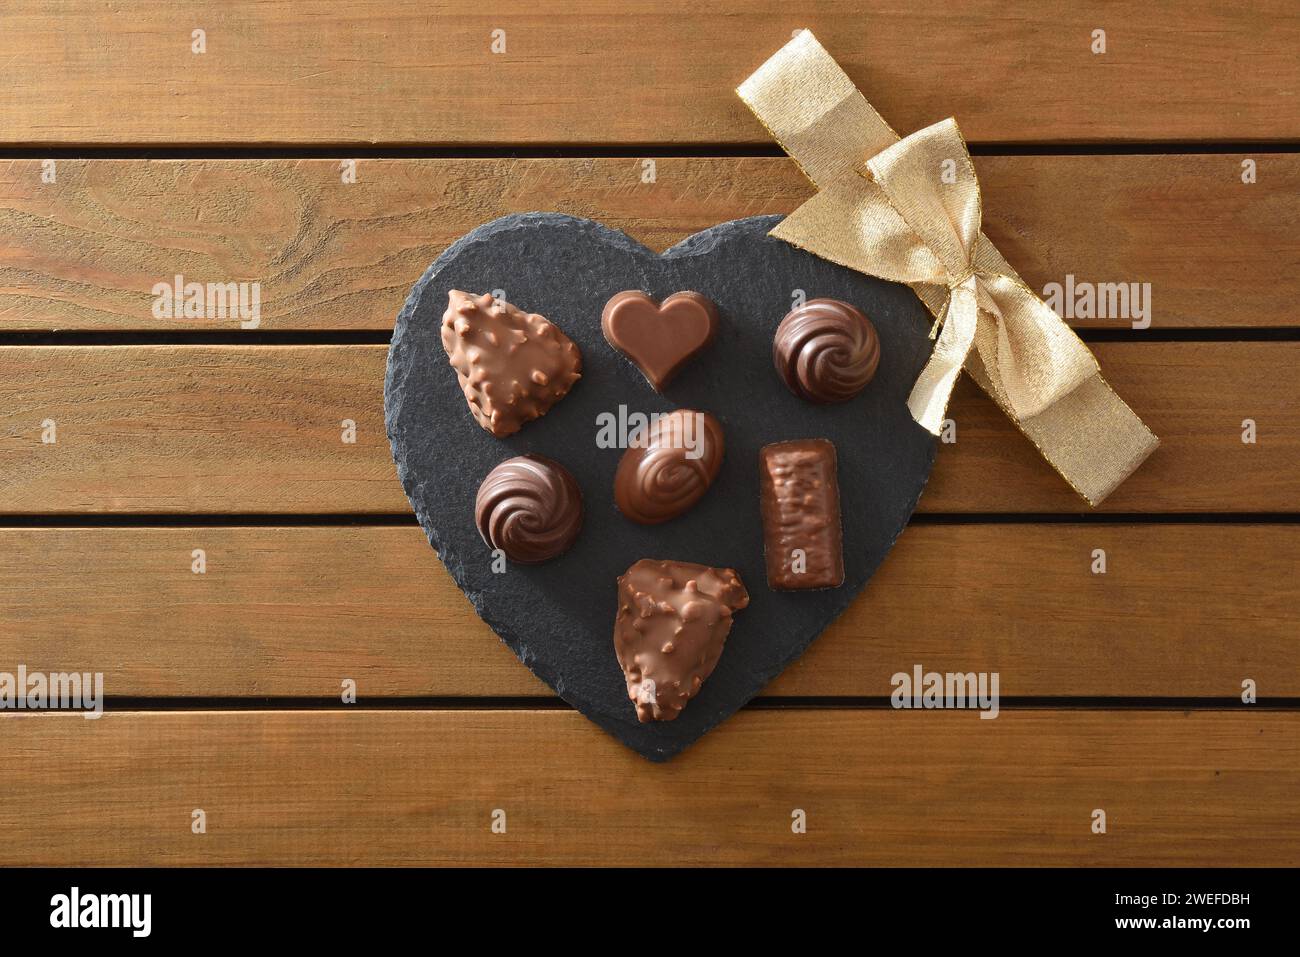 Assortiment de chocolats sur une assiette en ardoise en forme de coeur avec noeud doré au centre sur une table à lattes en bois. Vue de dessus. Banque D'Images